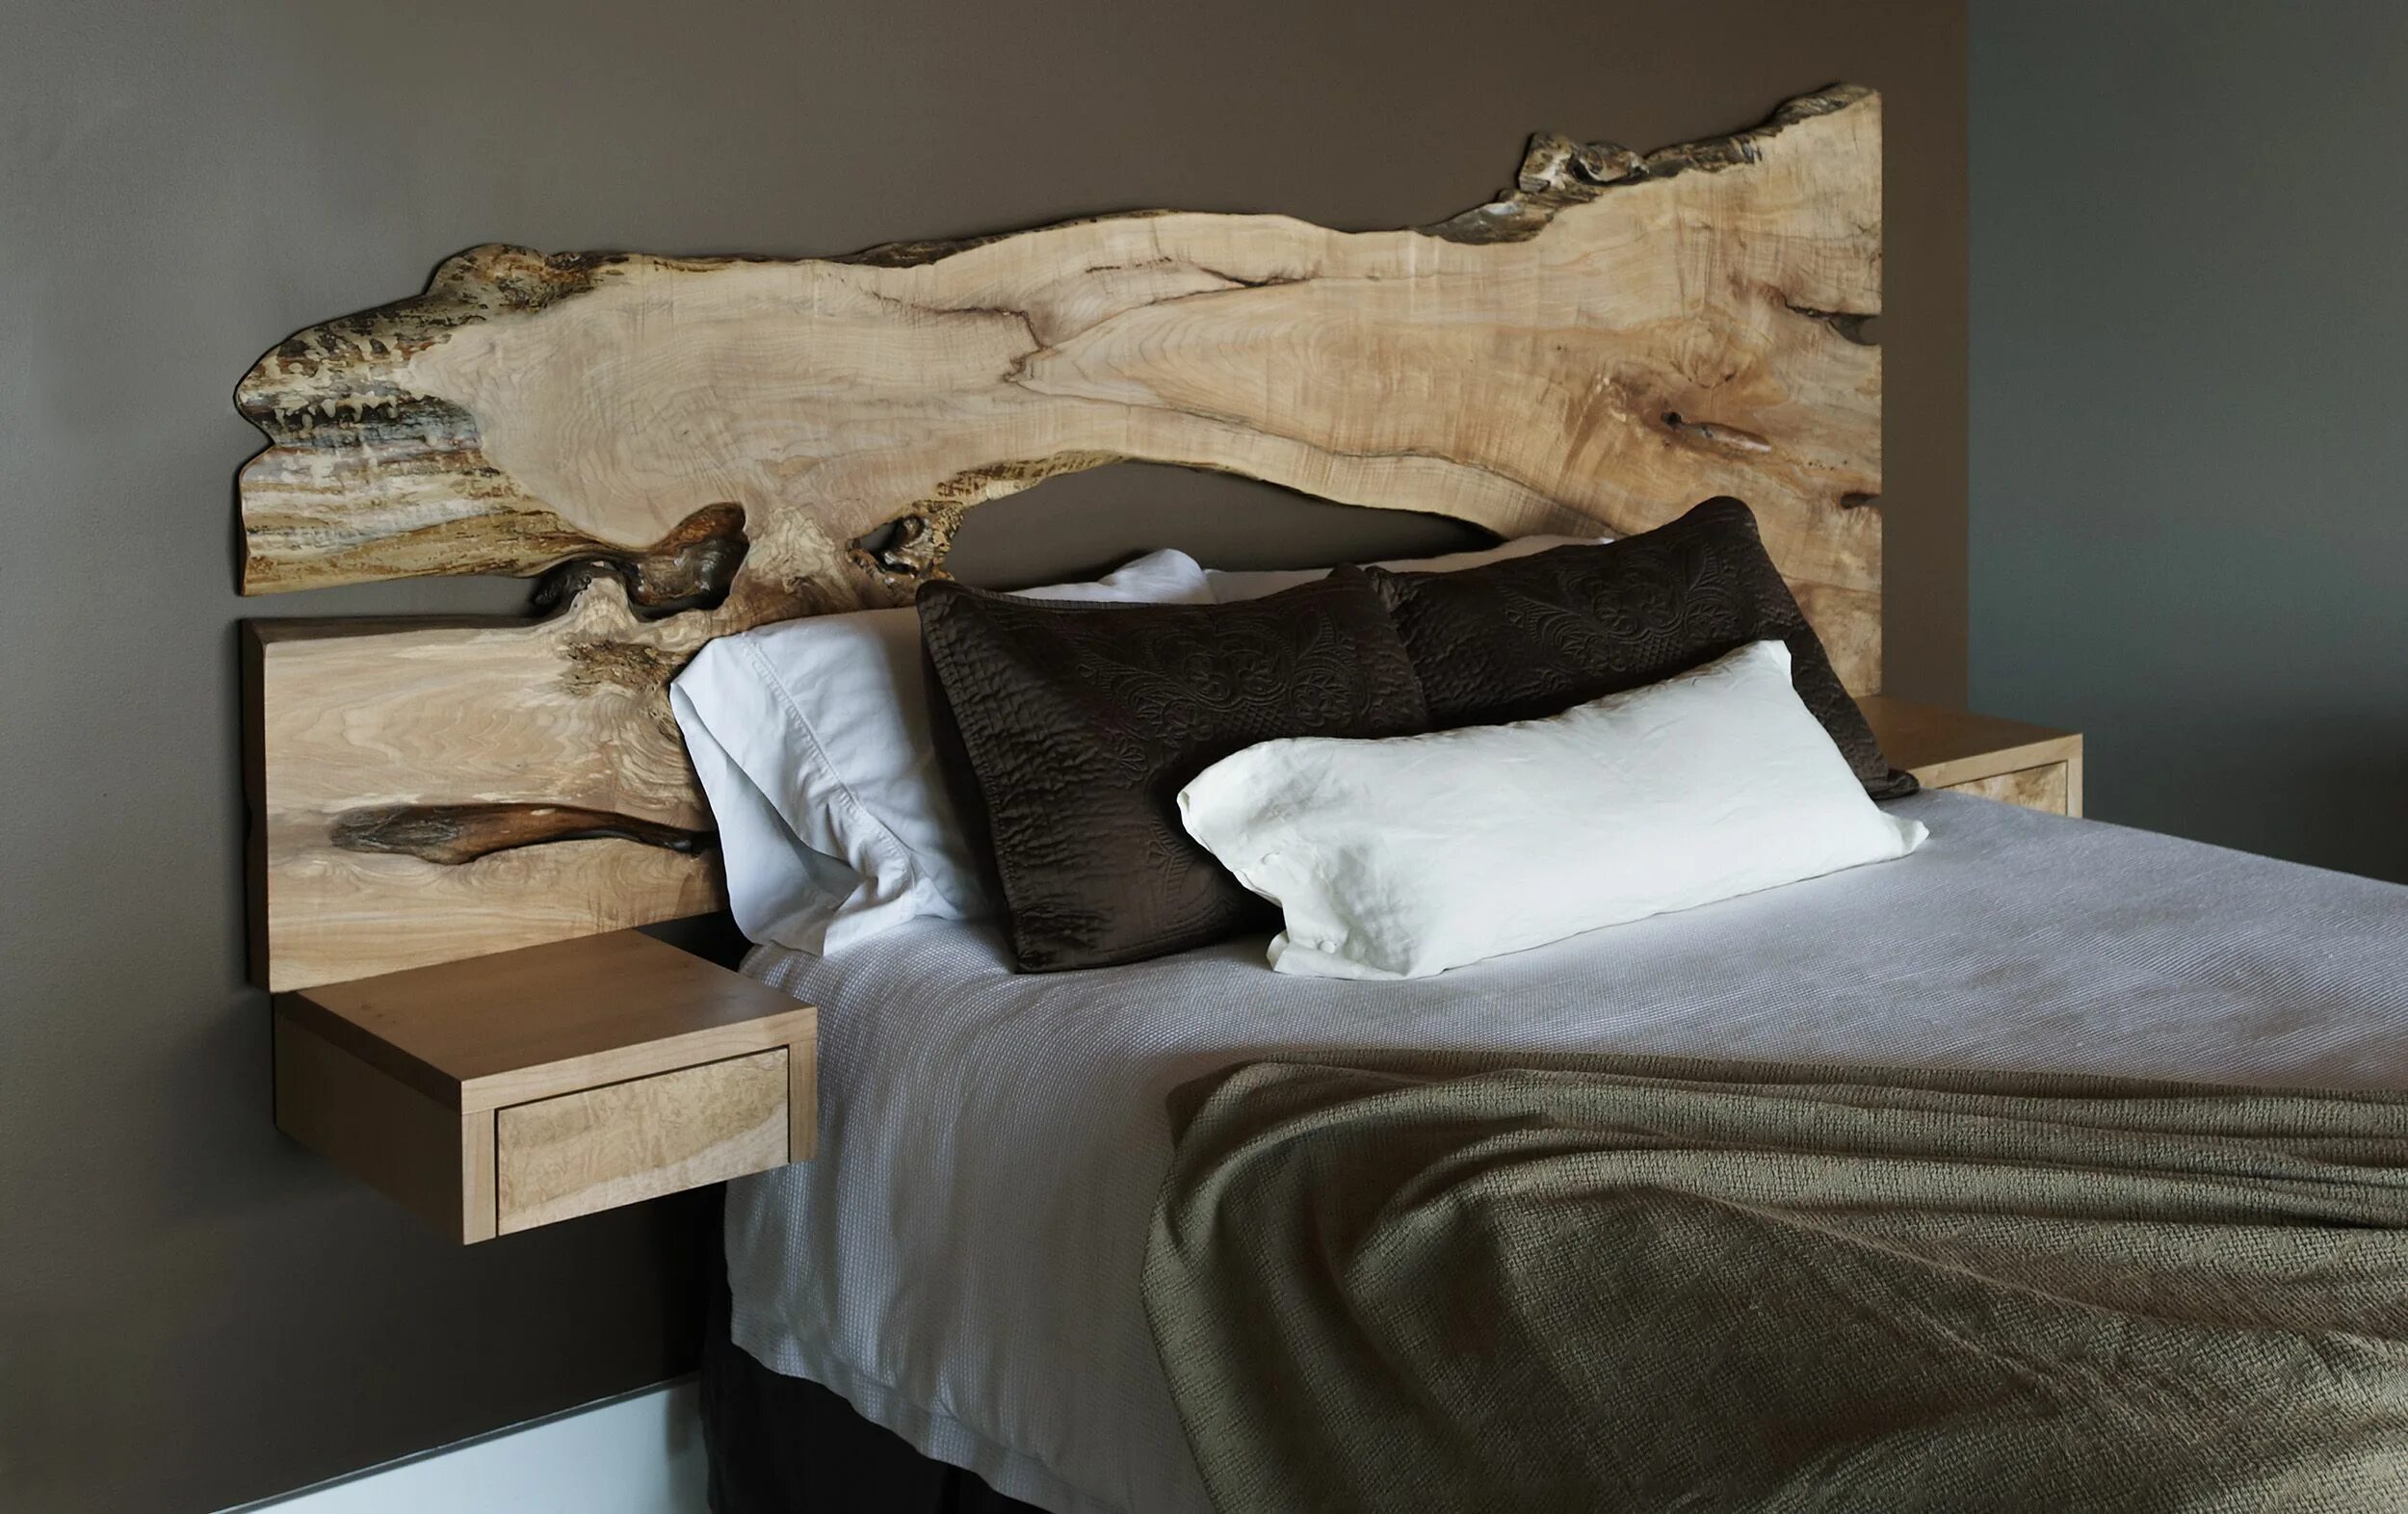 Изголовье кровати из дерева. Изголовье кровати из слэба с эпоксидной смолой. Кровать с деревянным изголовьем. Кровать из слэба дерева.